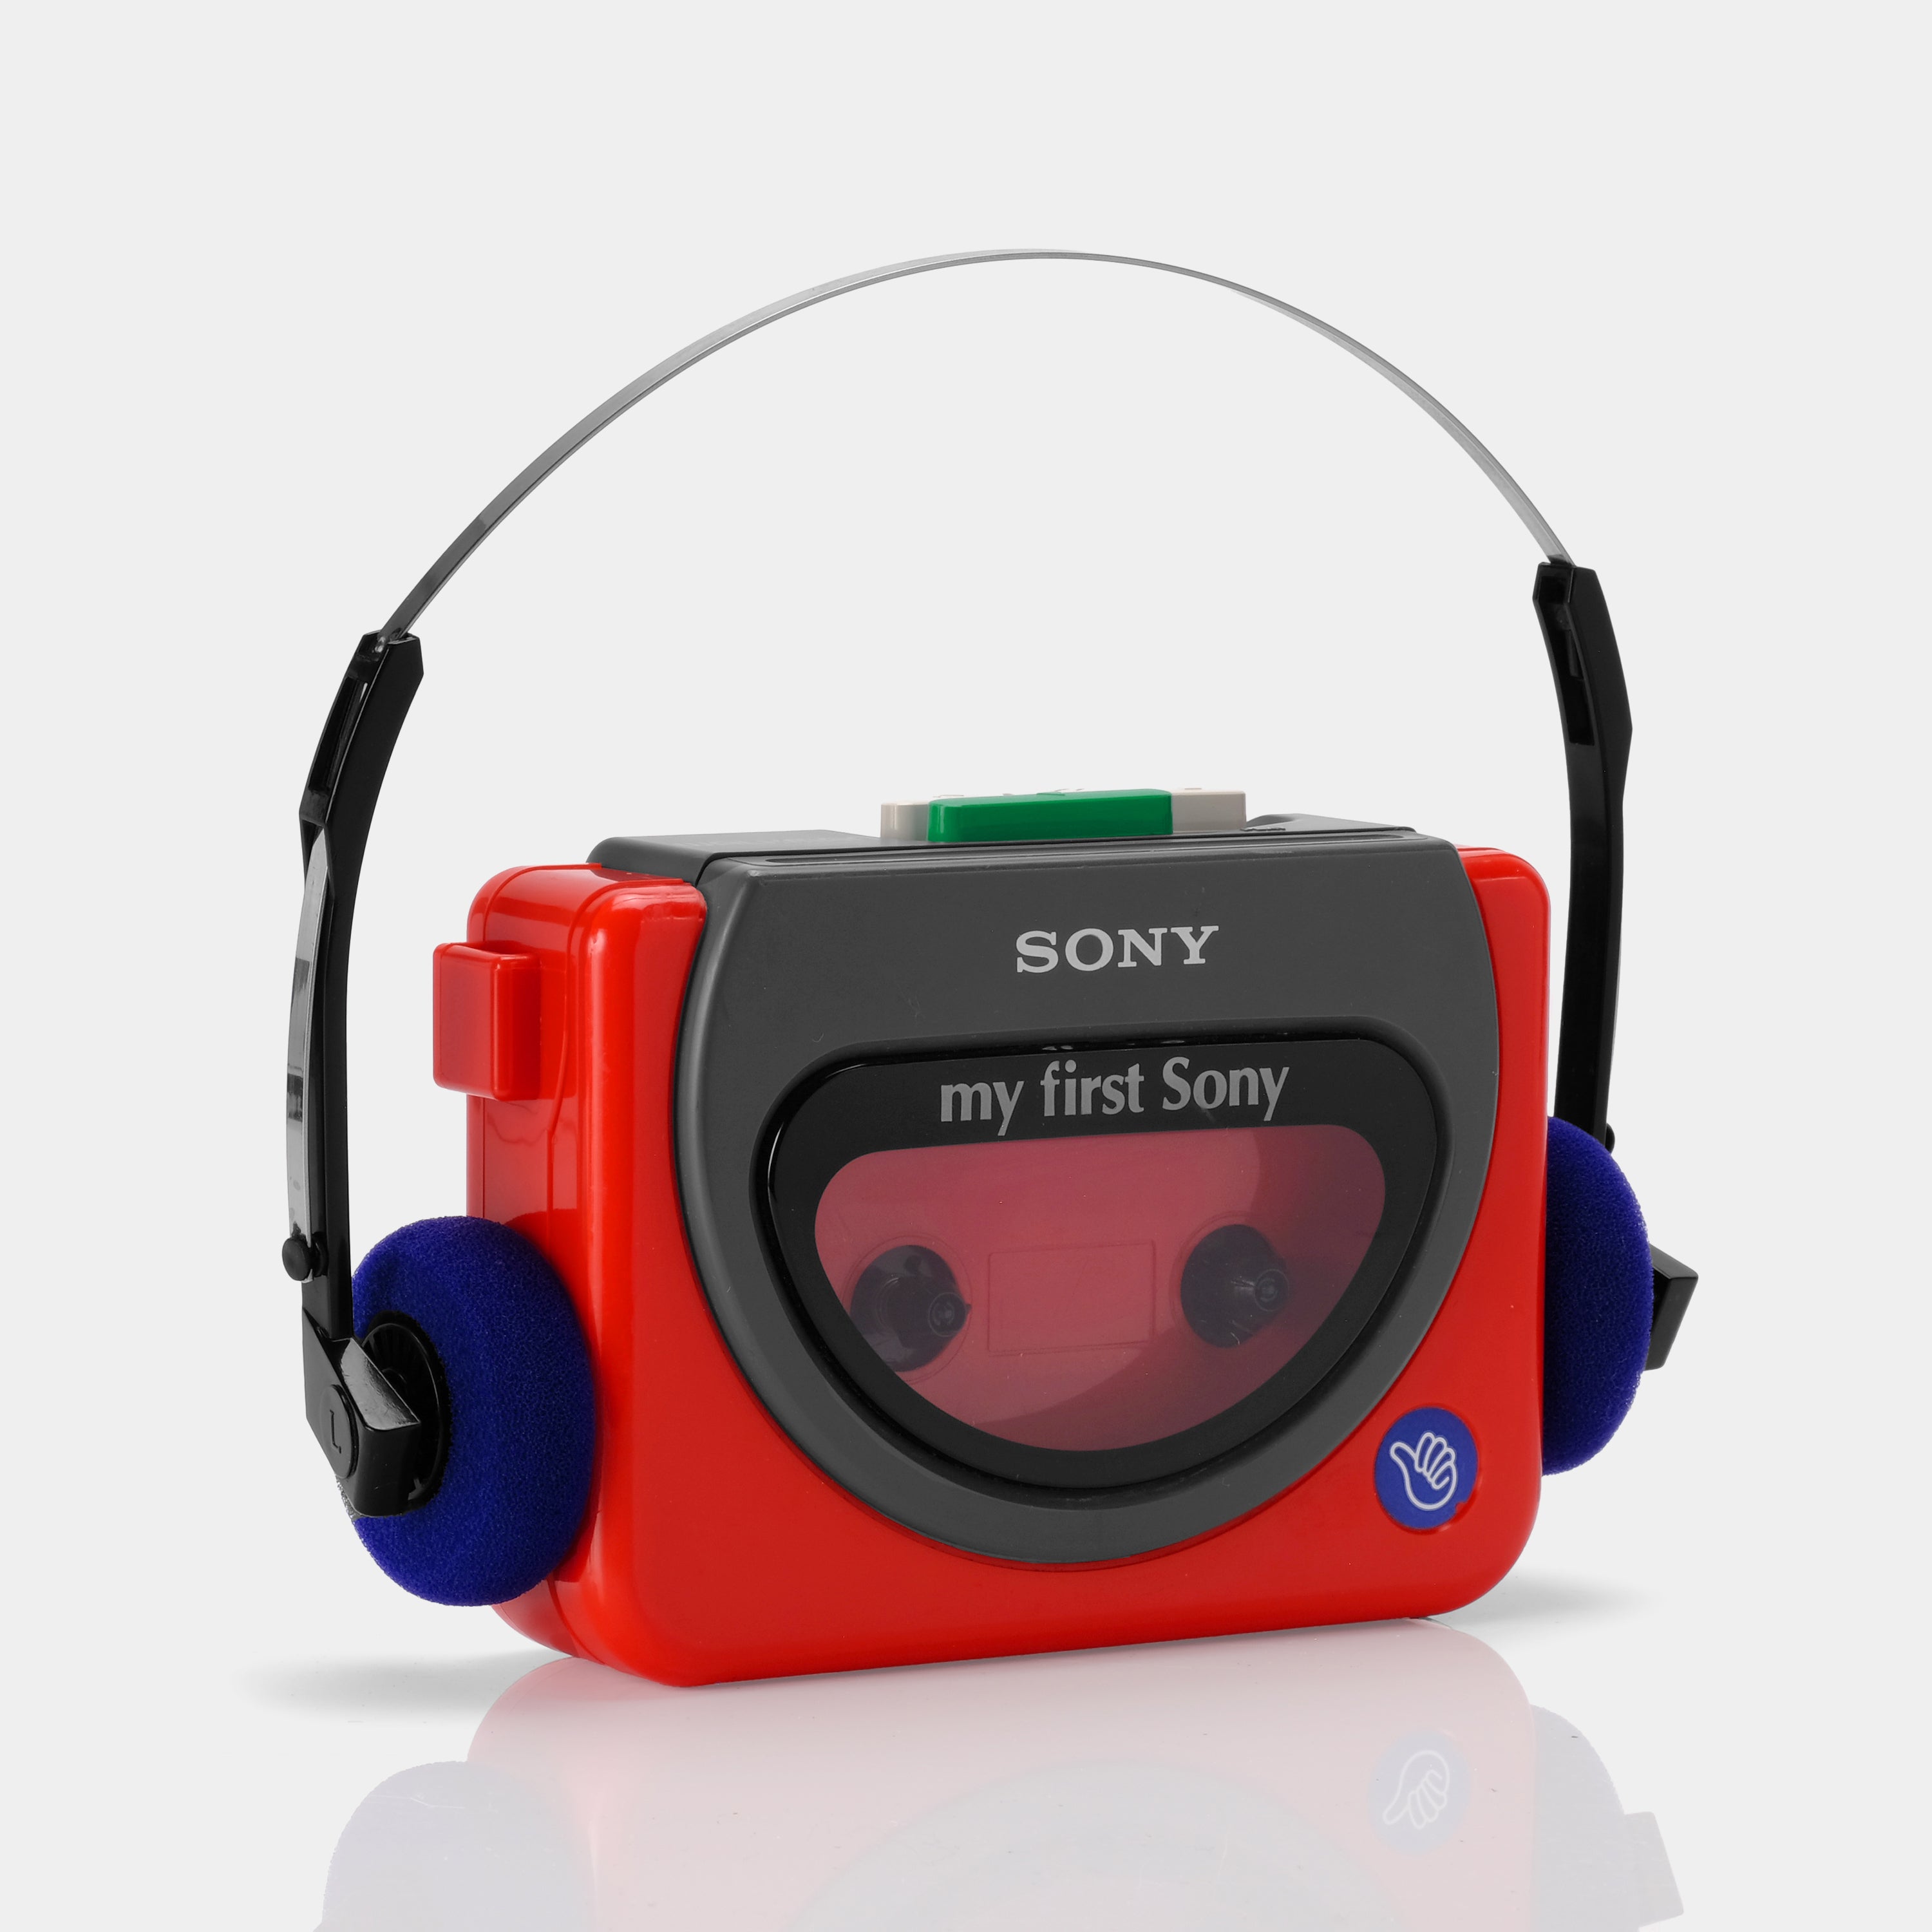 Sony Walkman WM-3000 